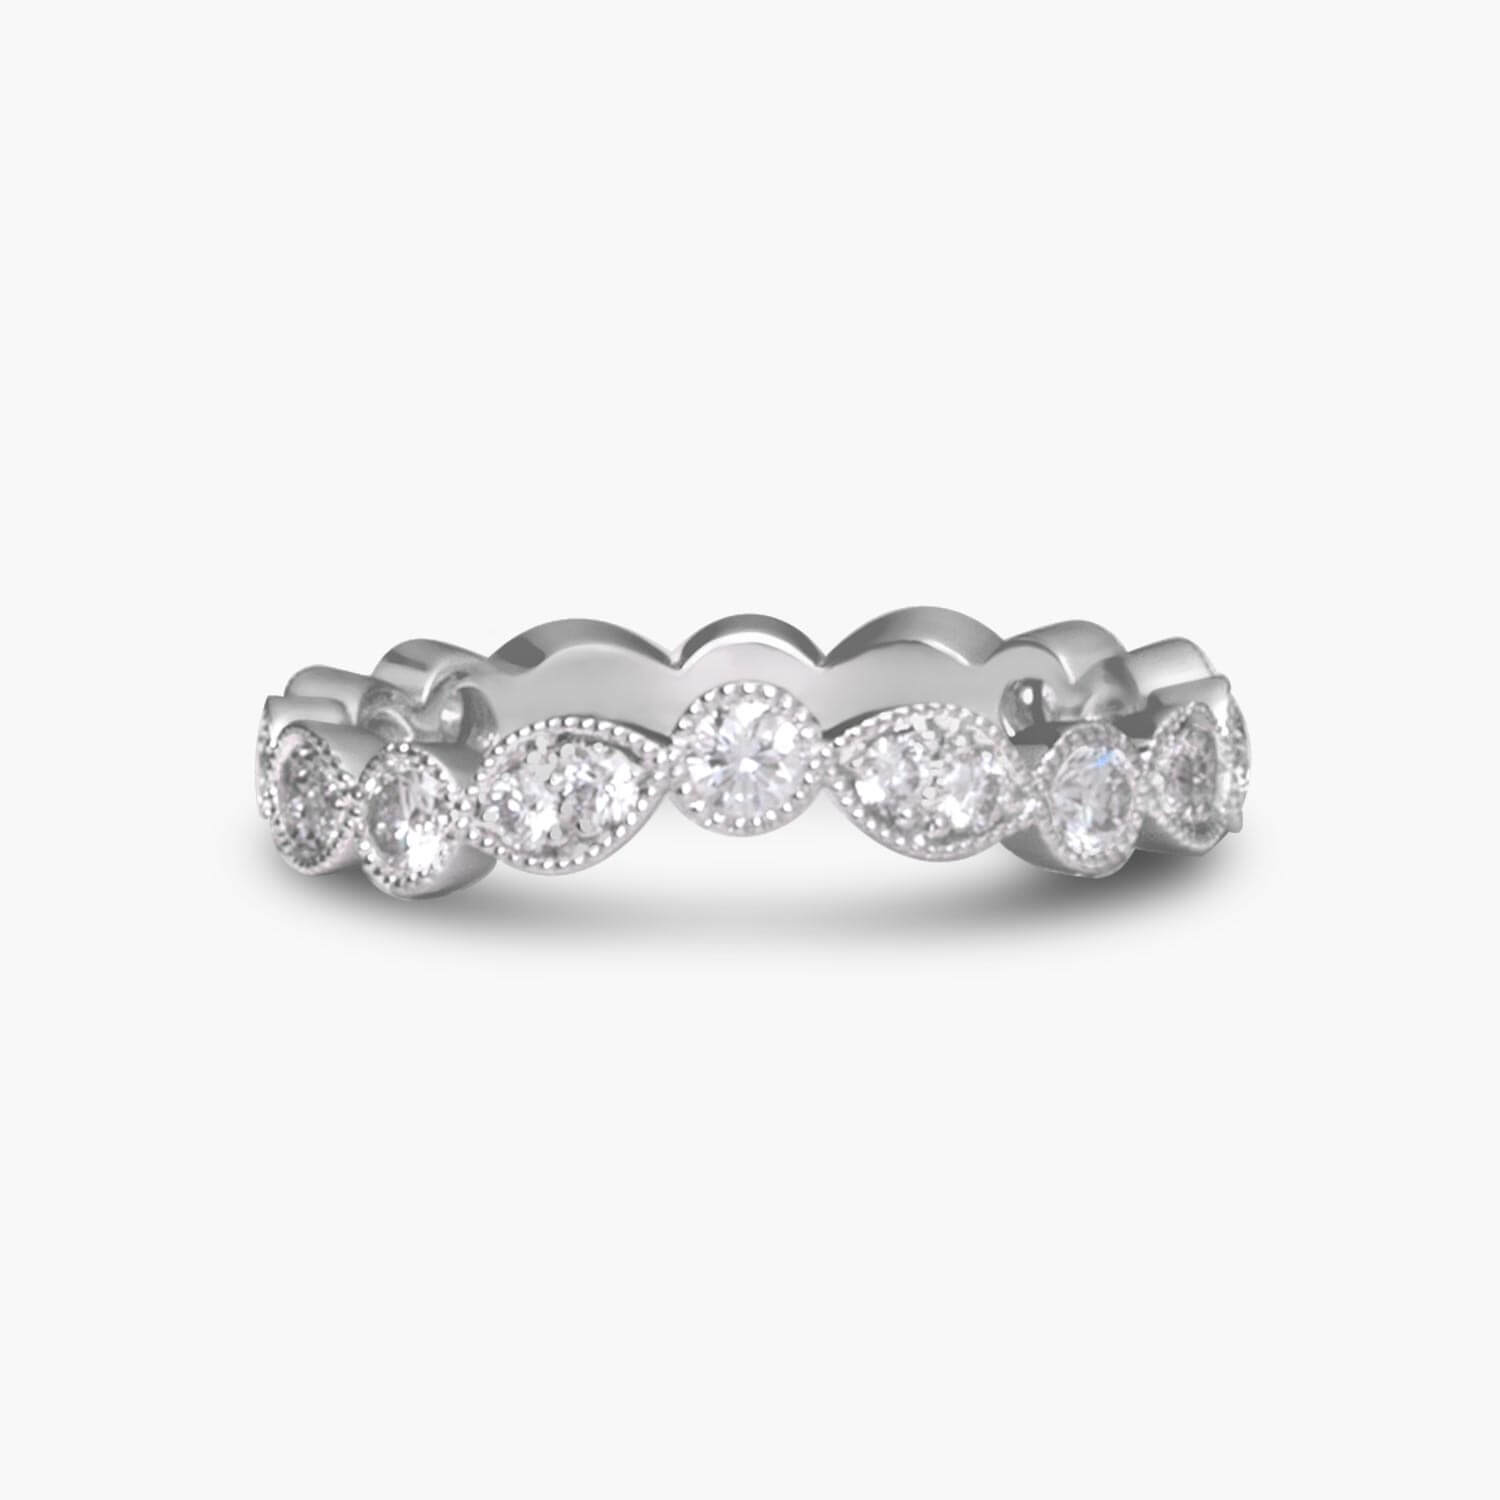 Bespoke Vintage Diamond Wedding Ring